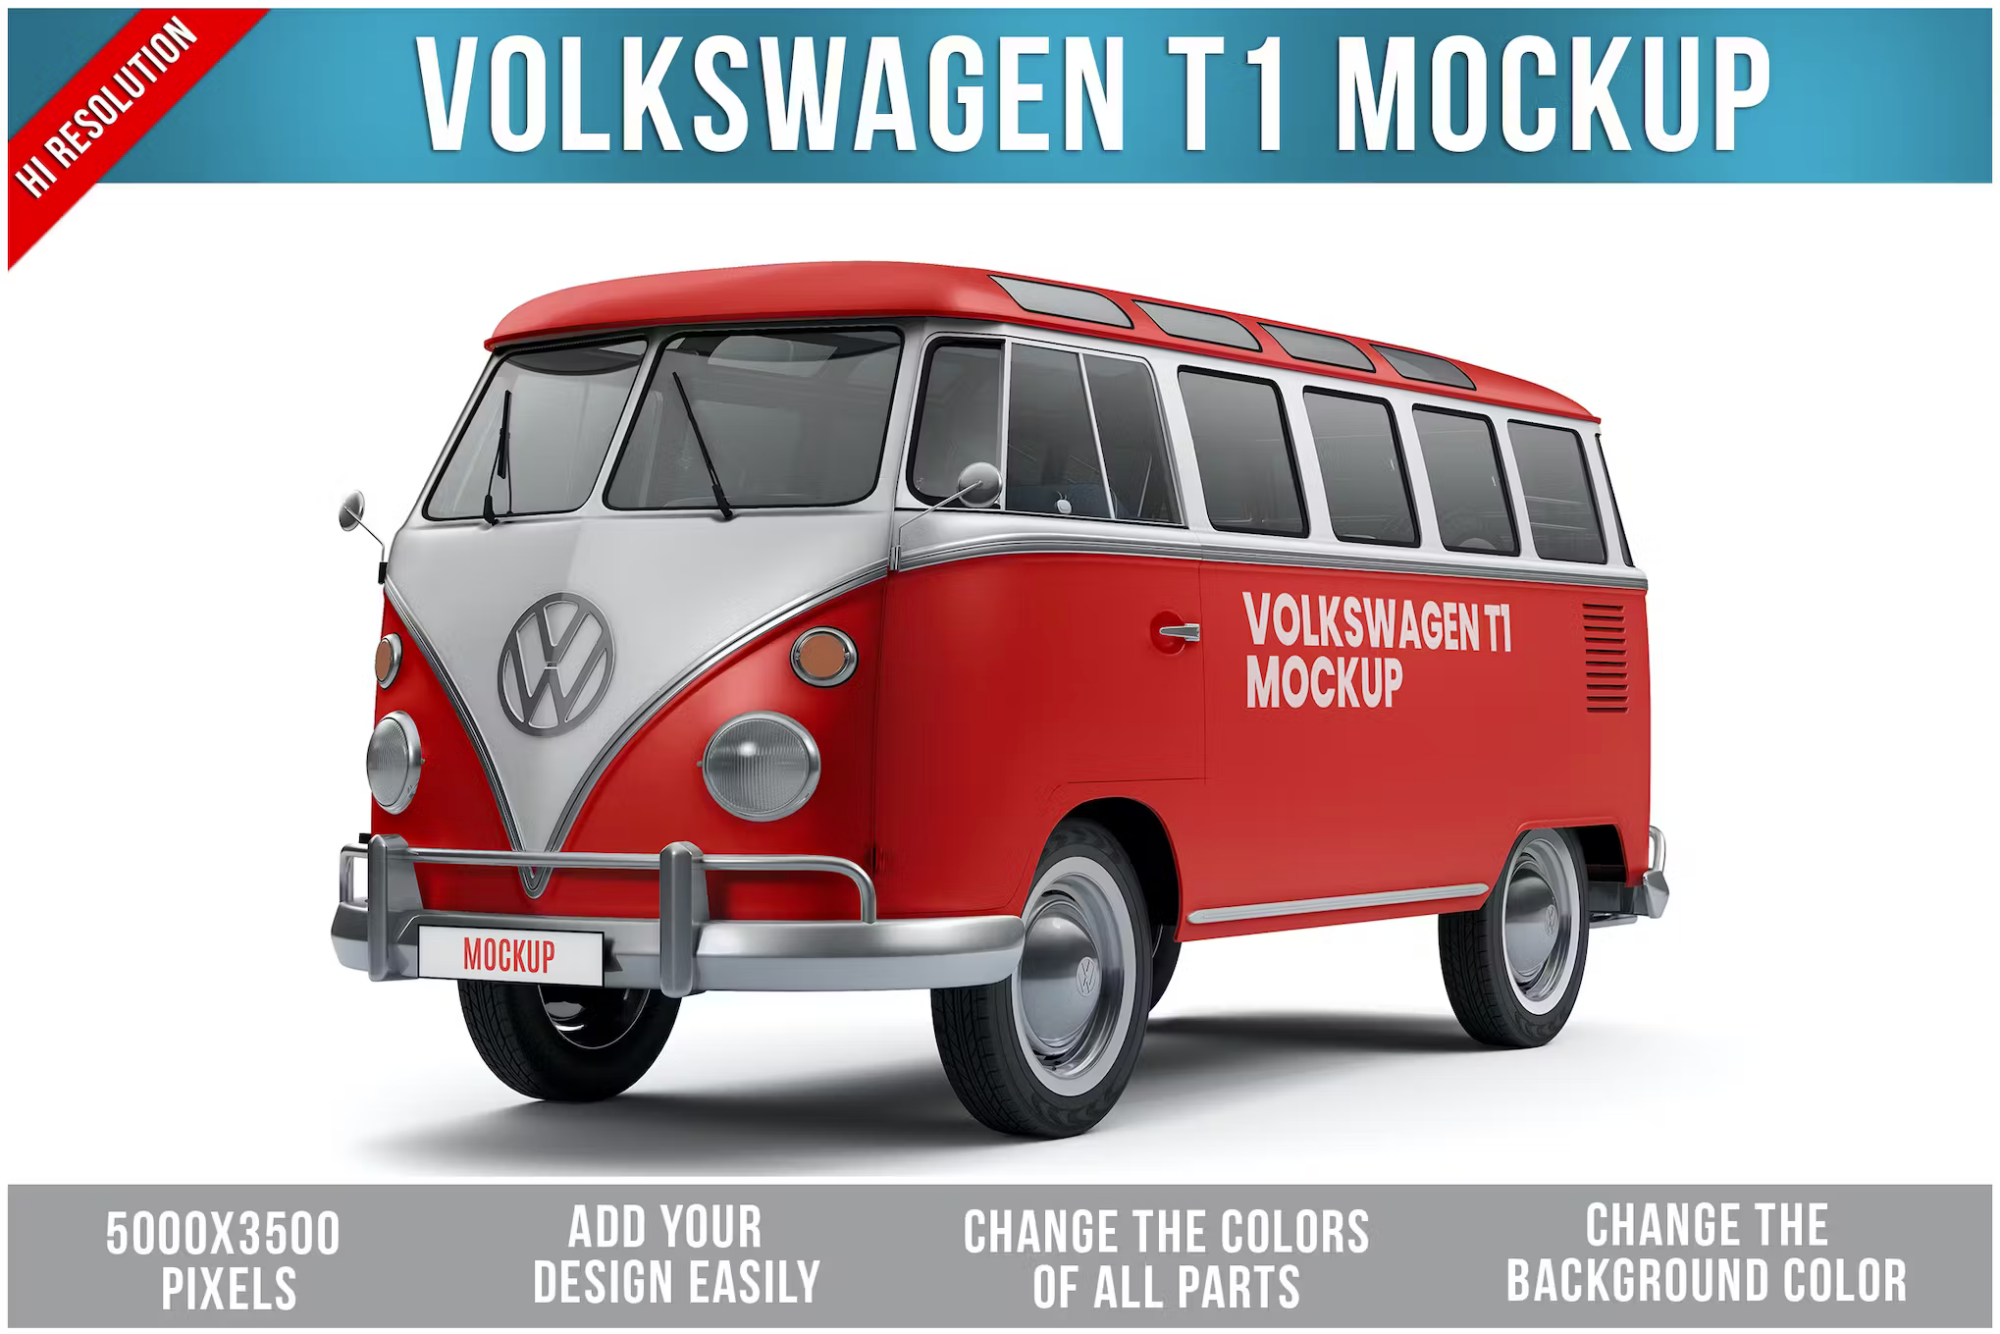 Volkswagen T1 Mockup